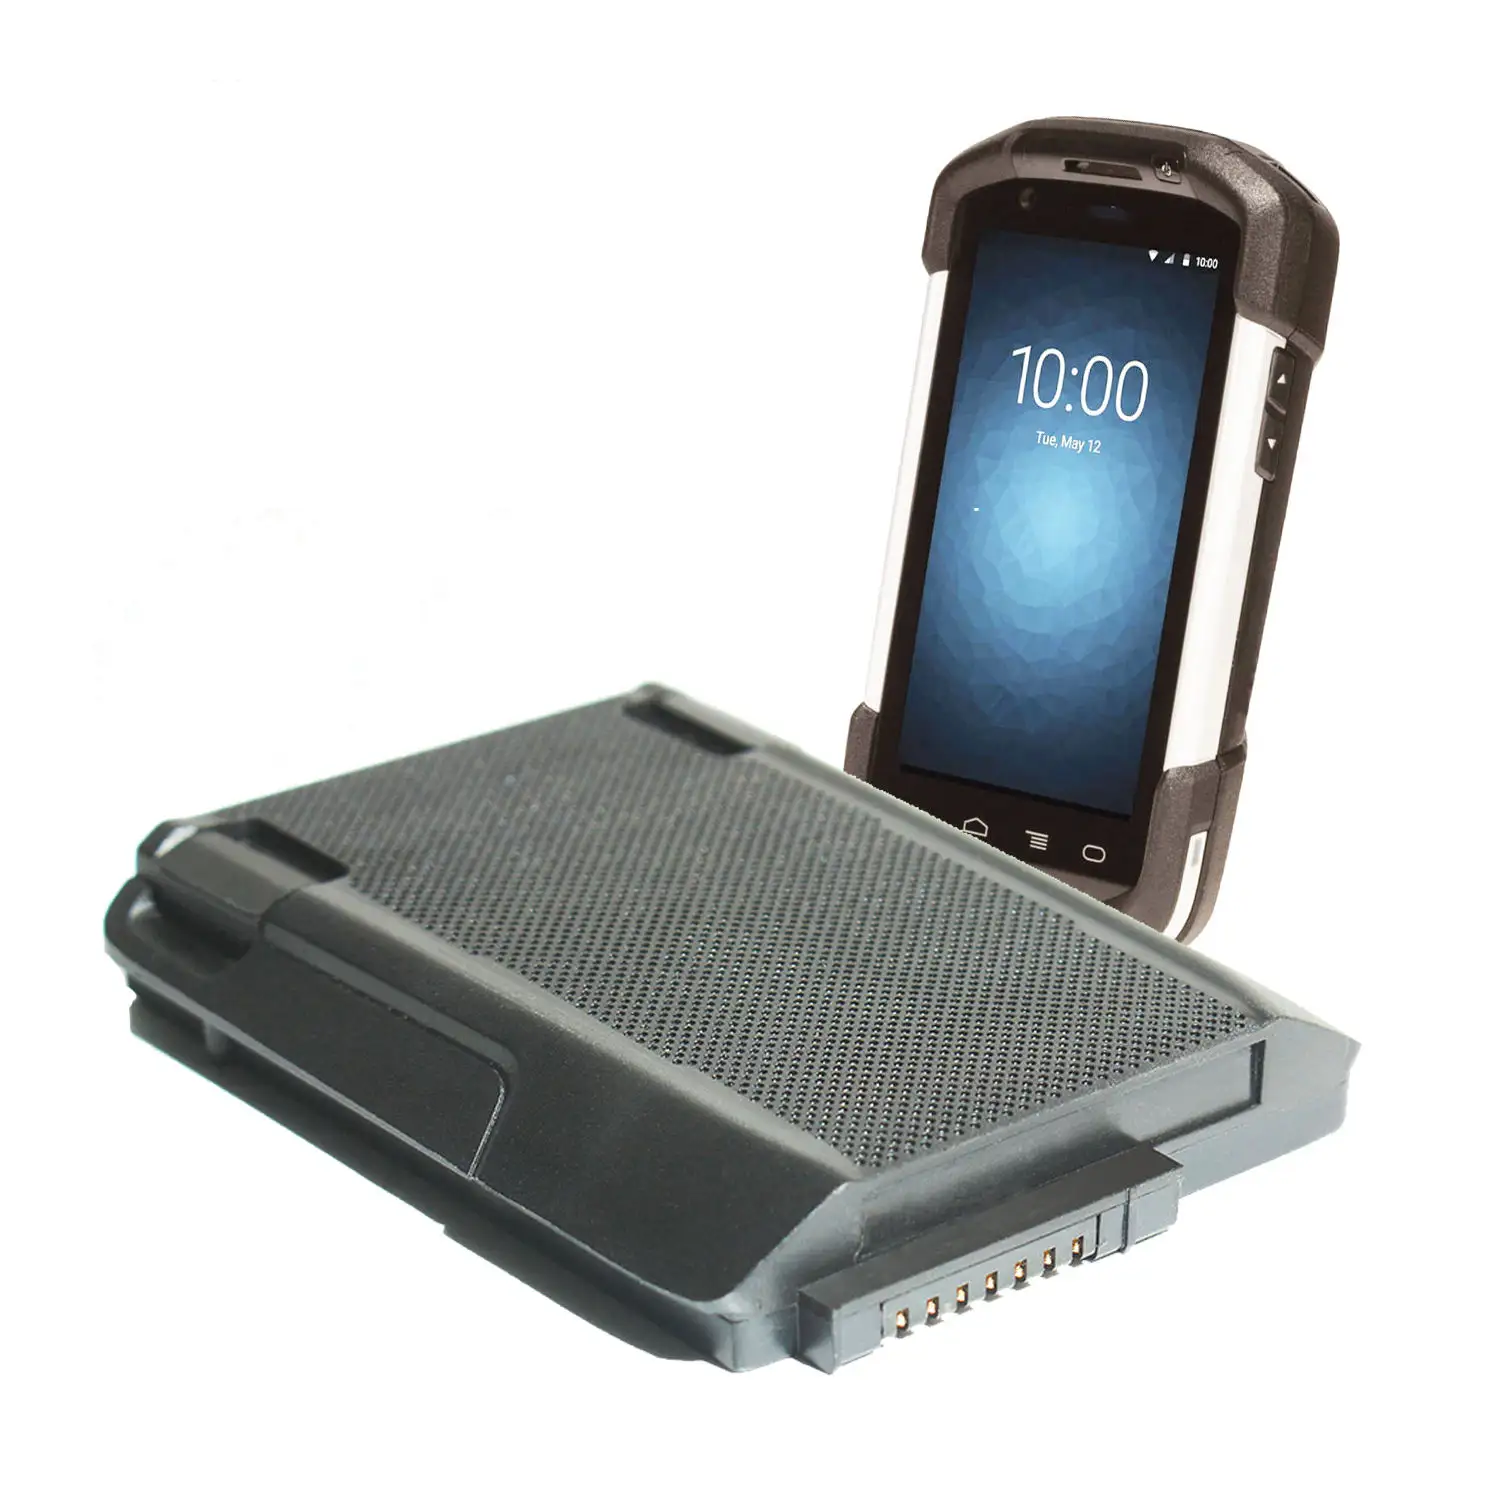 Bateria de reposição 3.7V 4620mah PDA bateria de scanner de íon de lítio TC72 BTRY-TC72 baterias recarregáveis